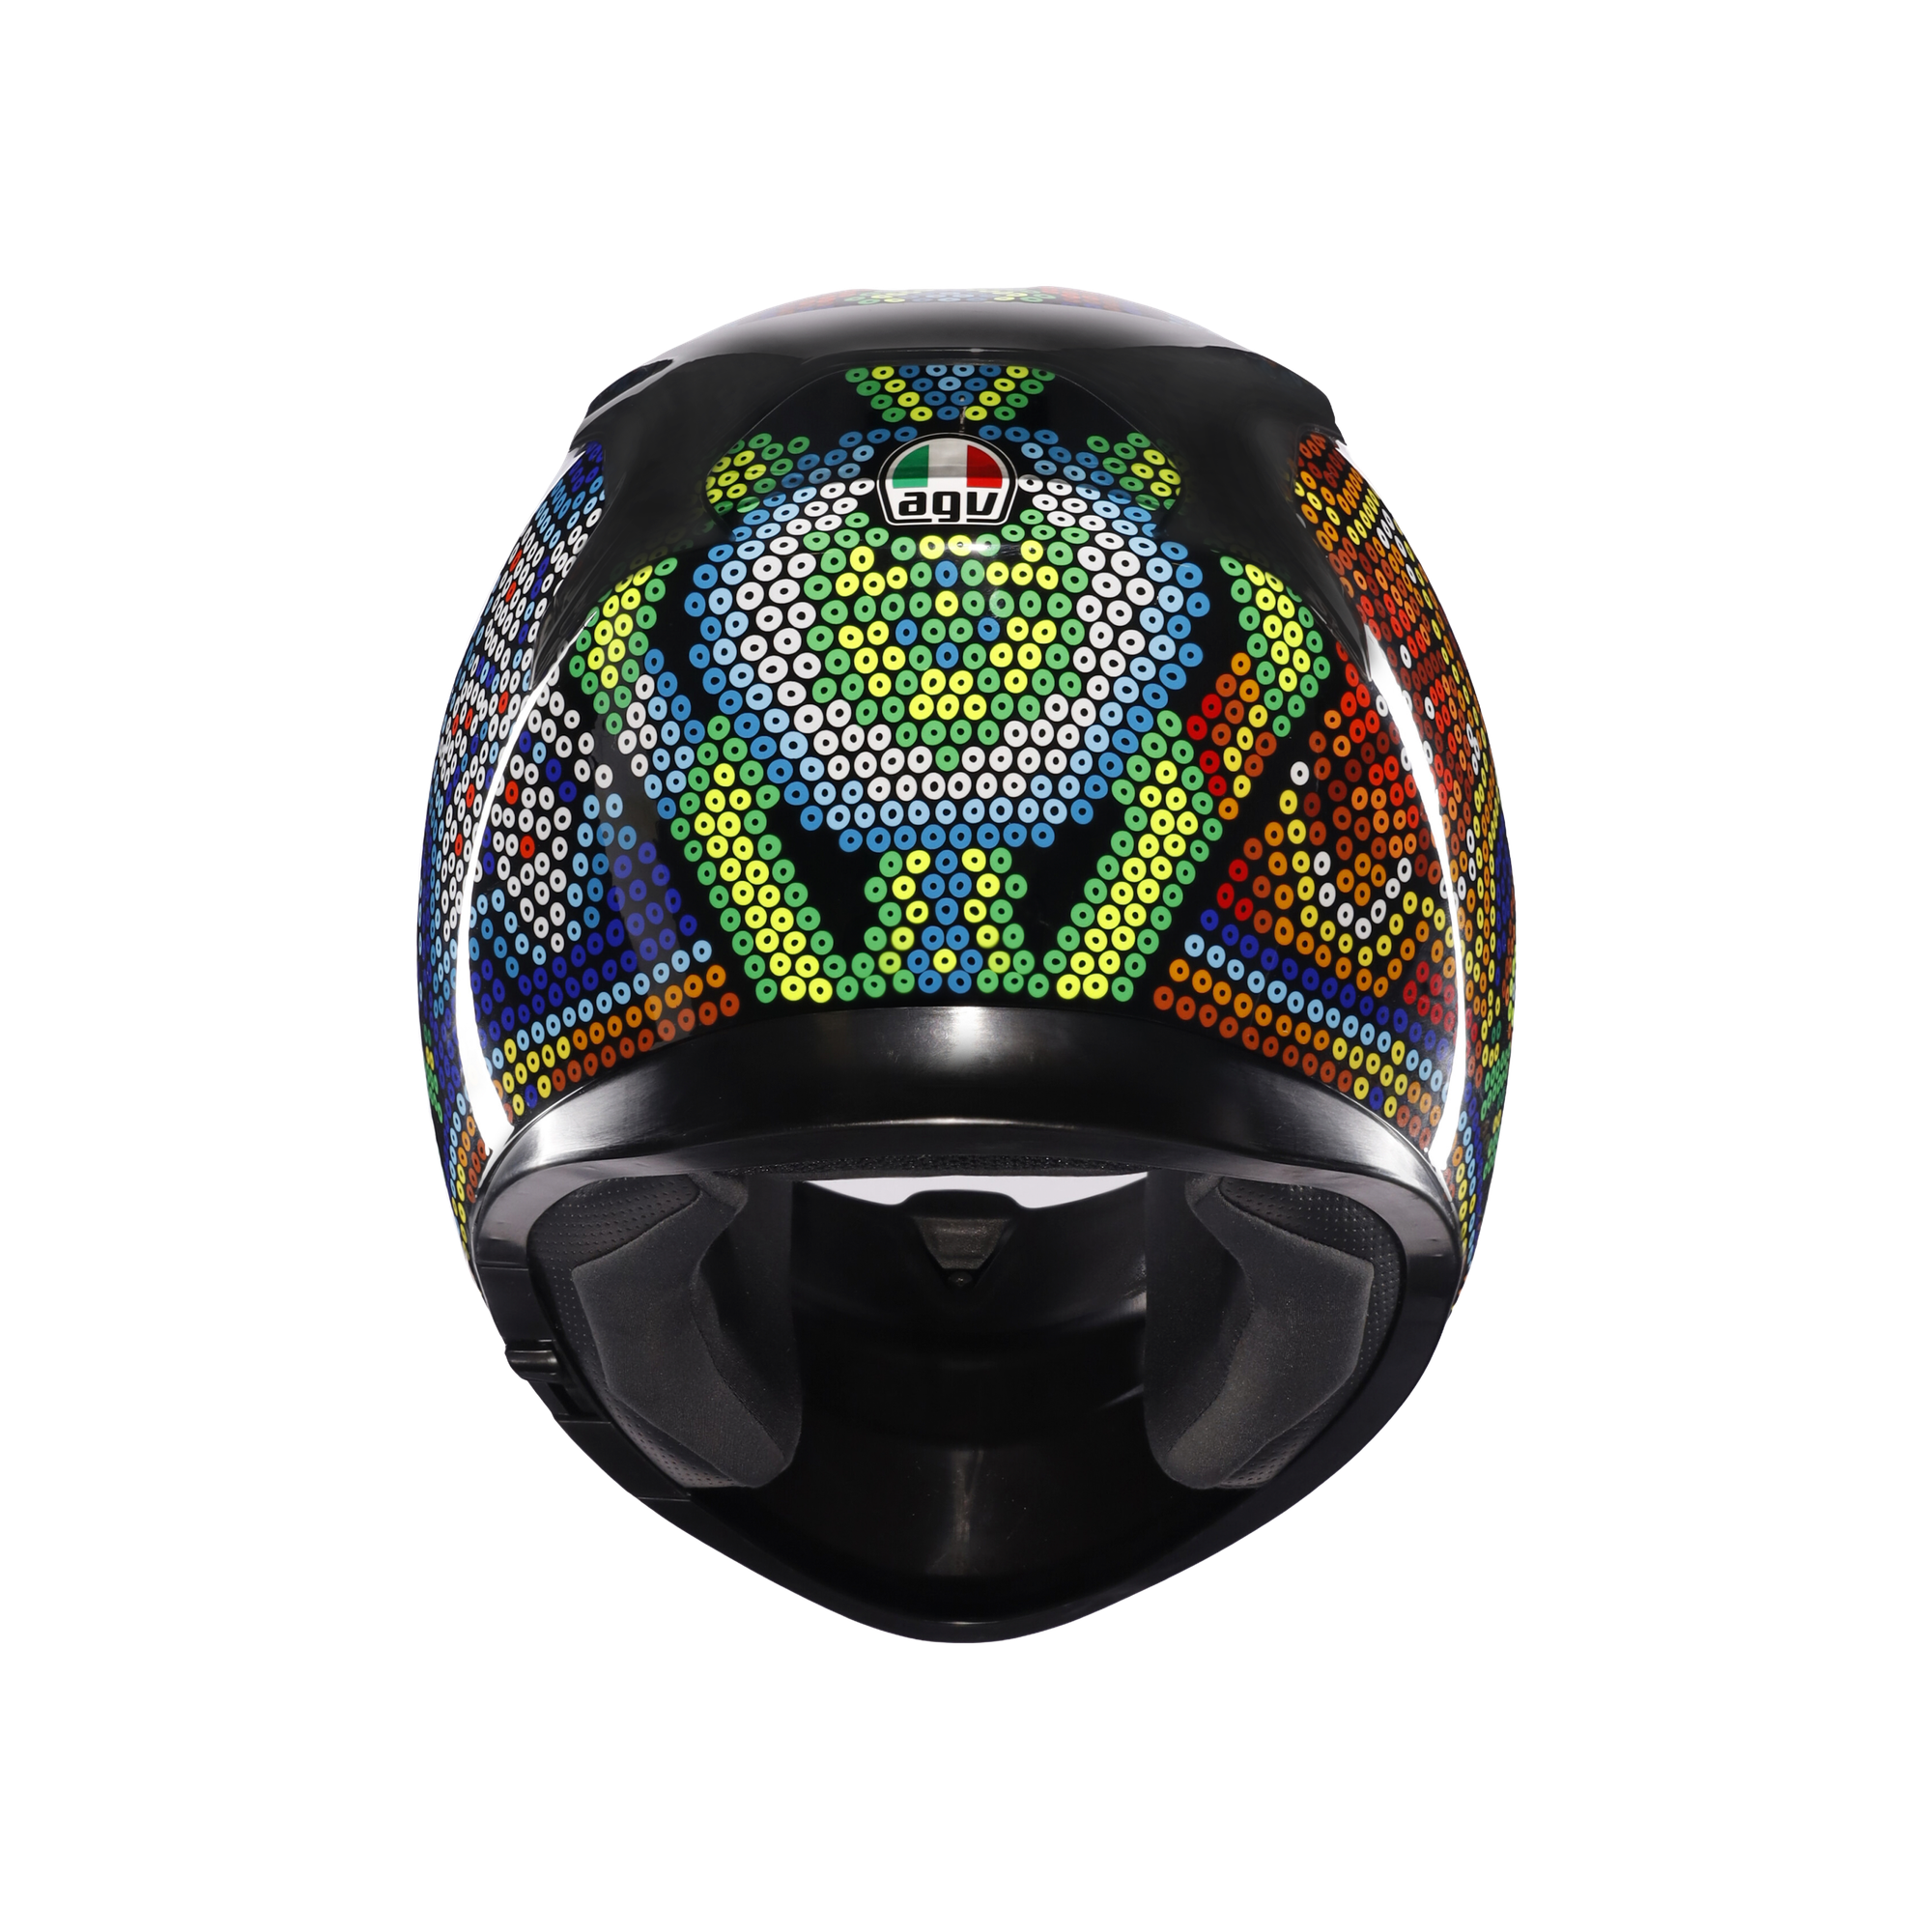 フルフェイスヘルメット | K3 AGV JIST MPLK Asian Fit 001-ROSSI WINTER TEST 2018 SG認証